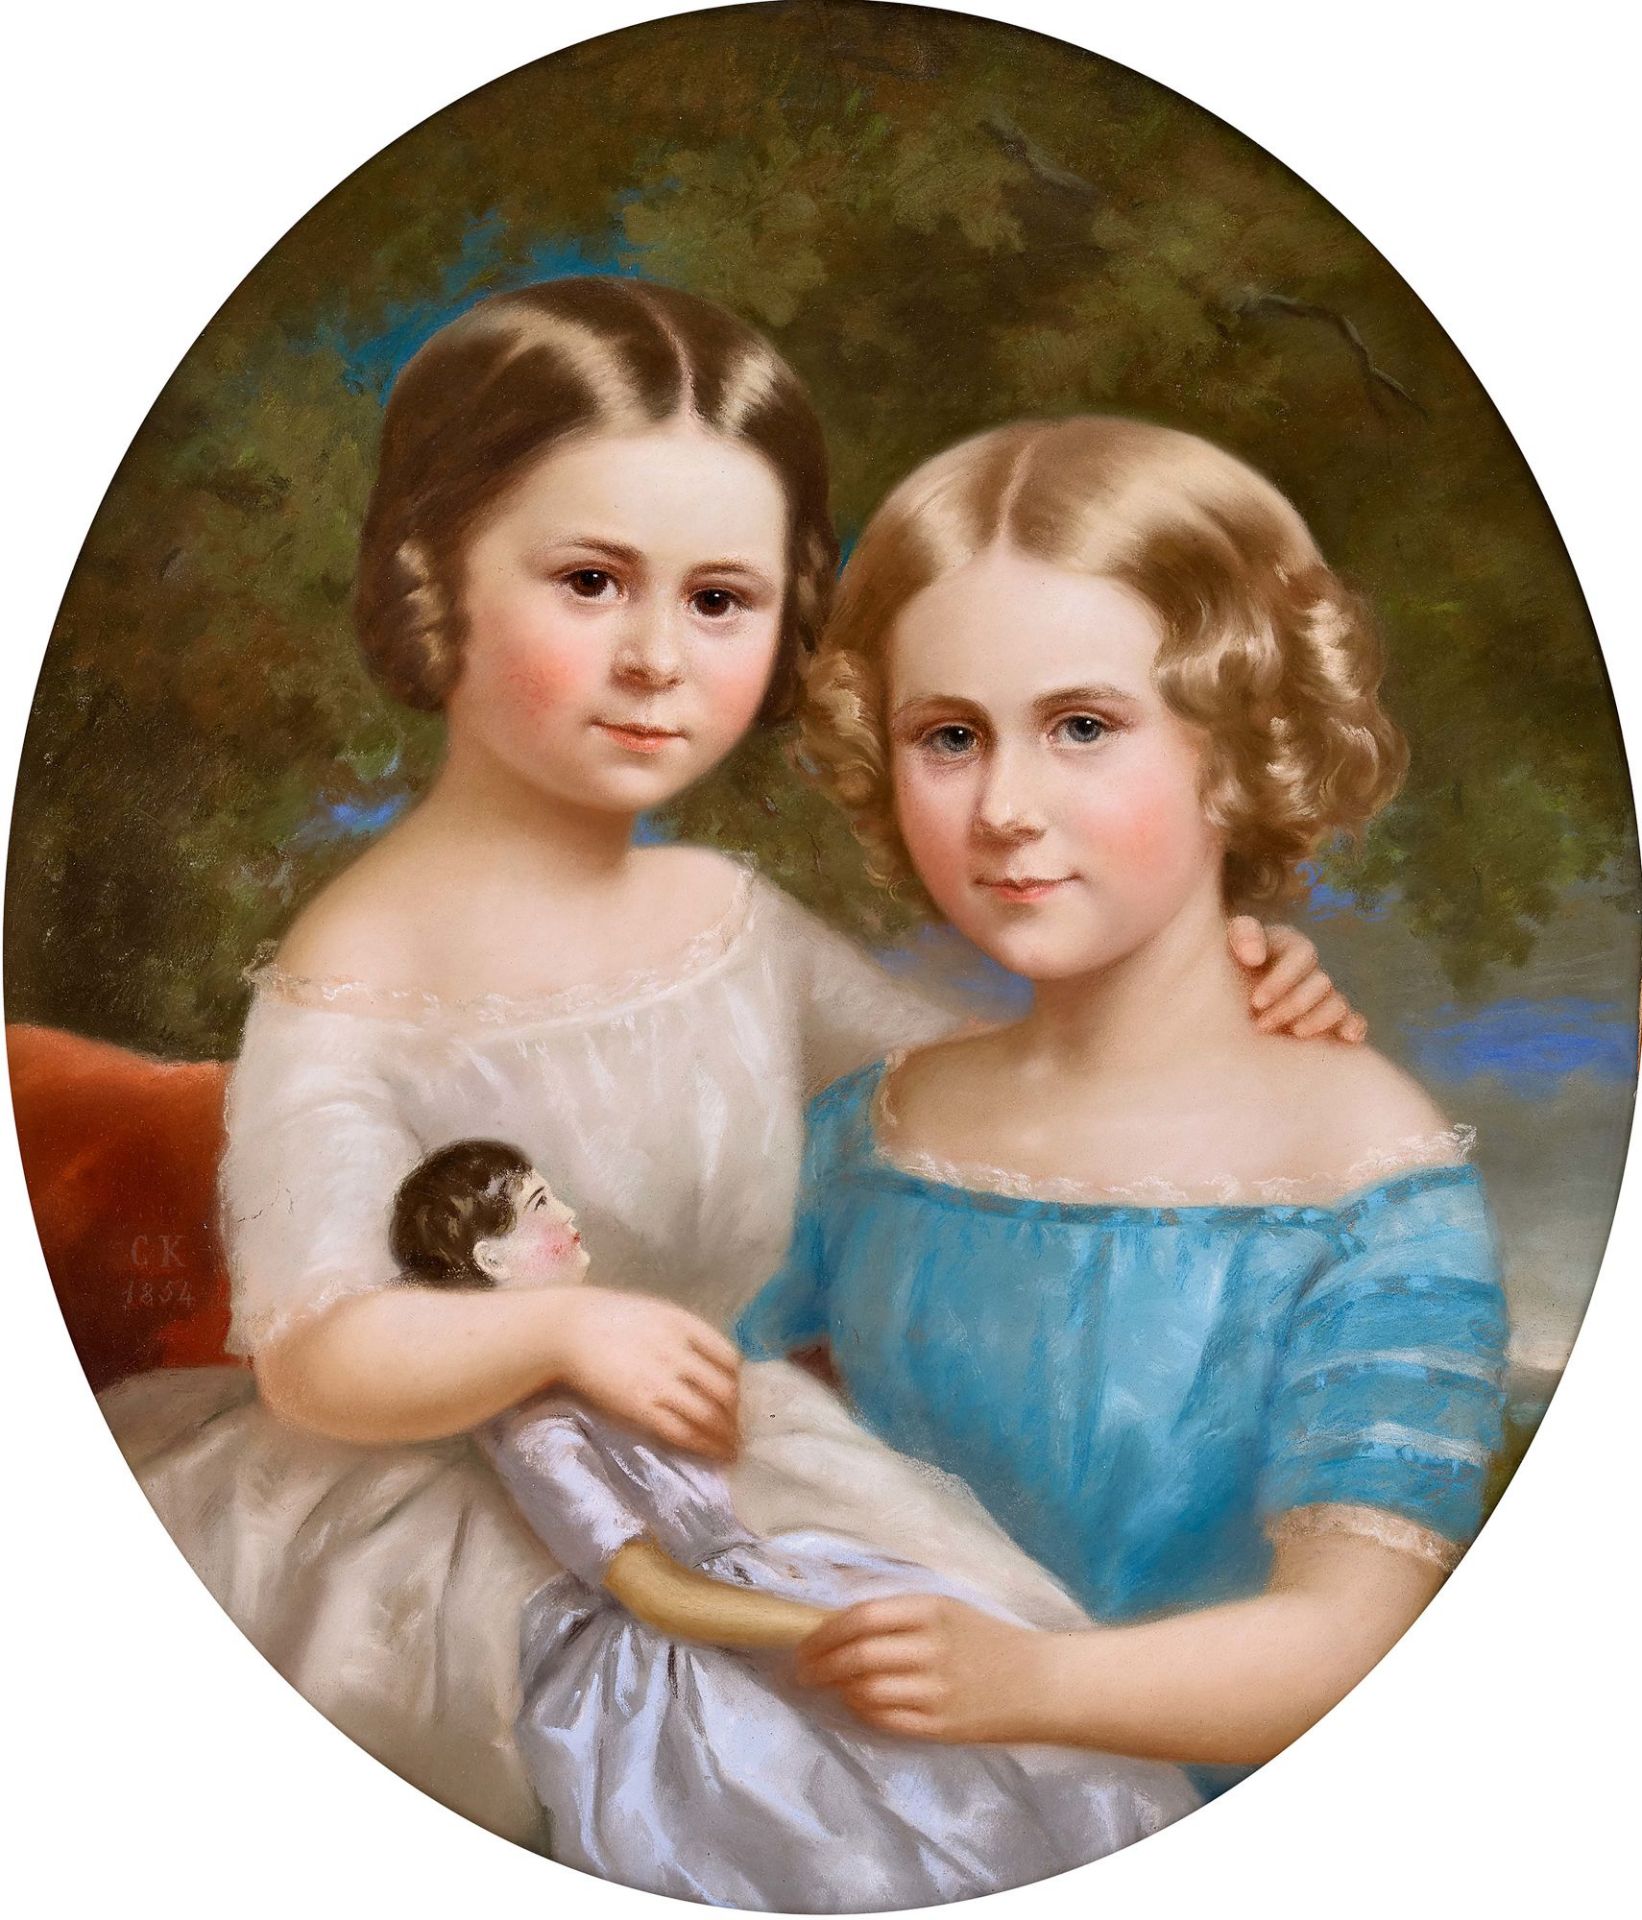 FRANKREICH, 19. JH.: Bildnis eines Schwesternpaares mit Puppe.